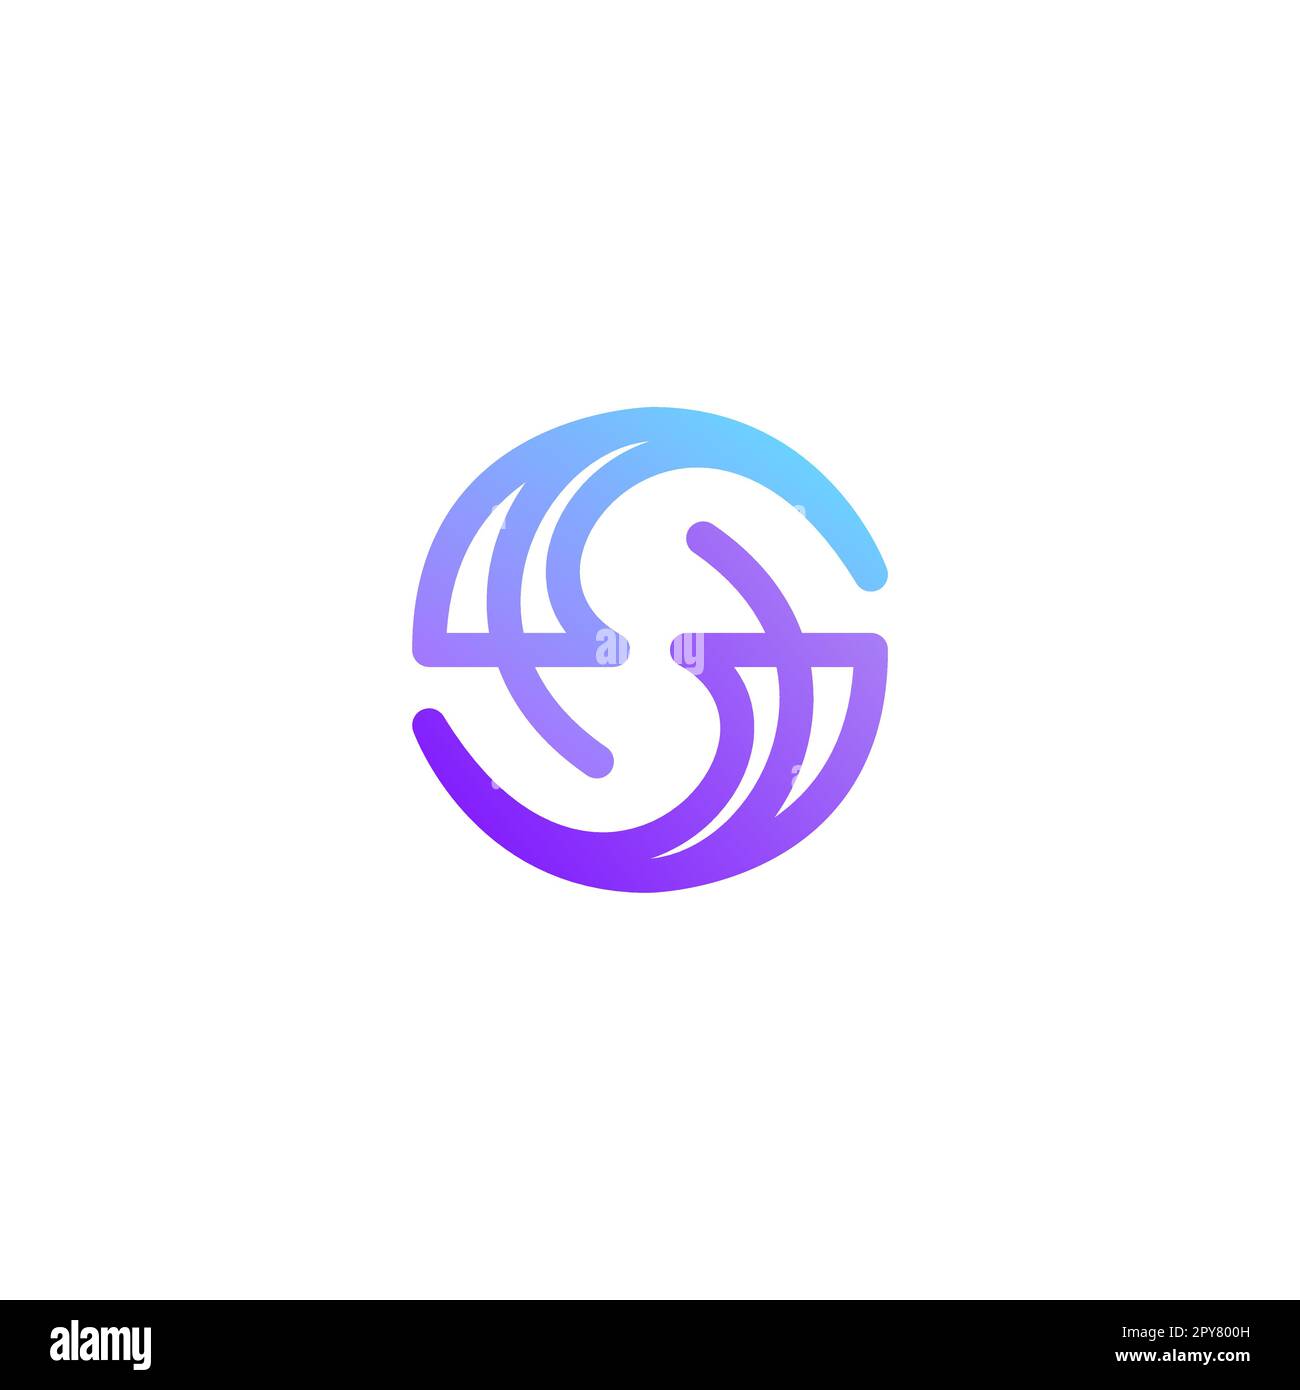 Modello vettoriale per il logo Letter S Media stile contorno lineare aziendale. Icona colorata del simbolo del logotipo Illustrazione Vettoriale